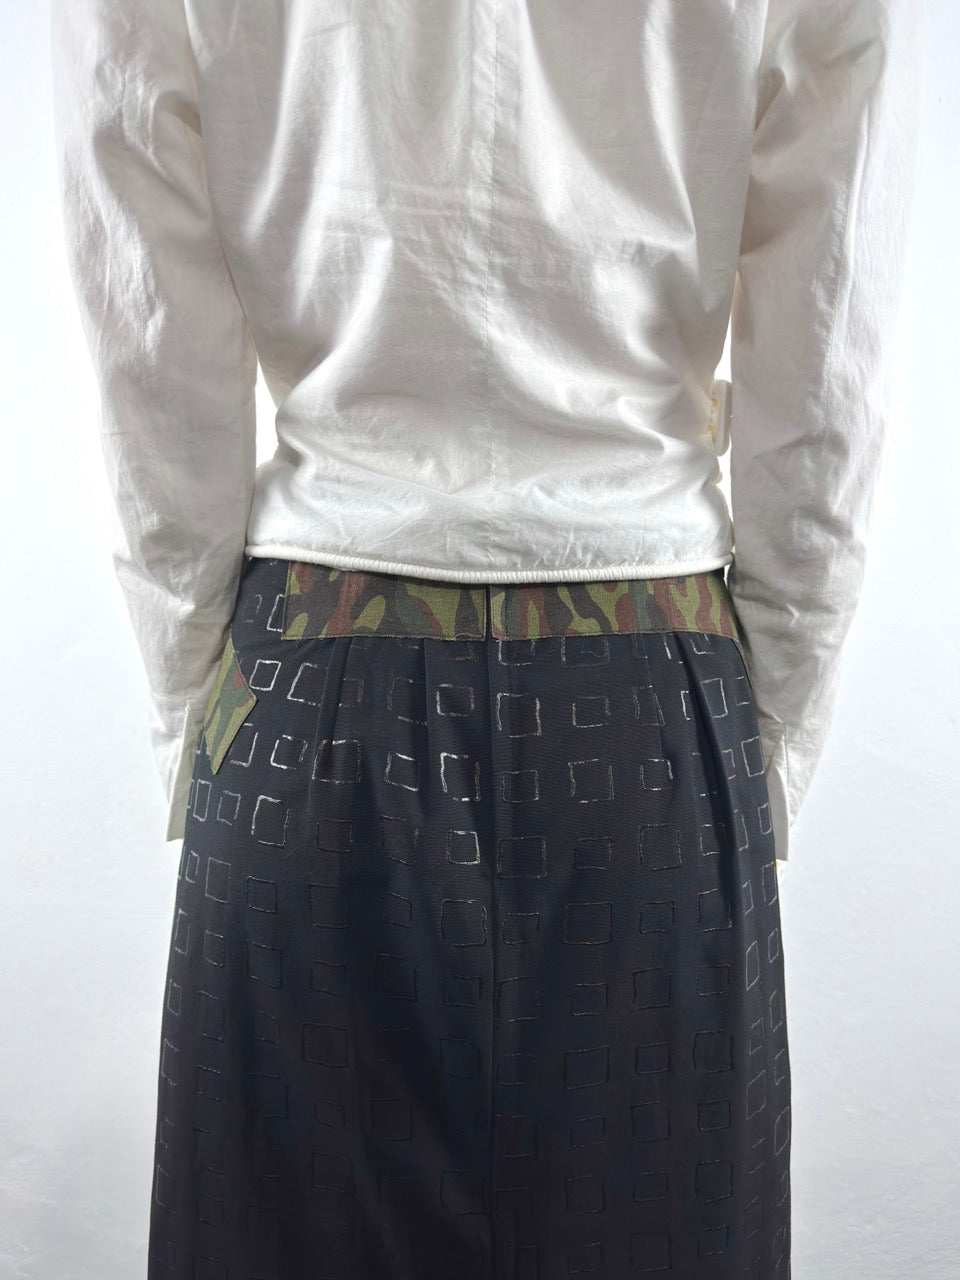 S/S 2001 Maxi Skirt (M)